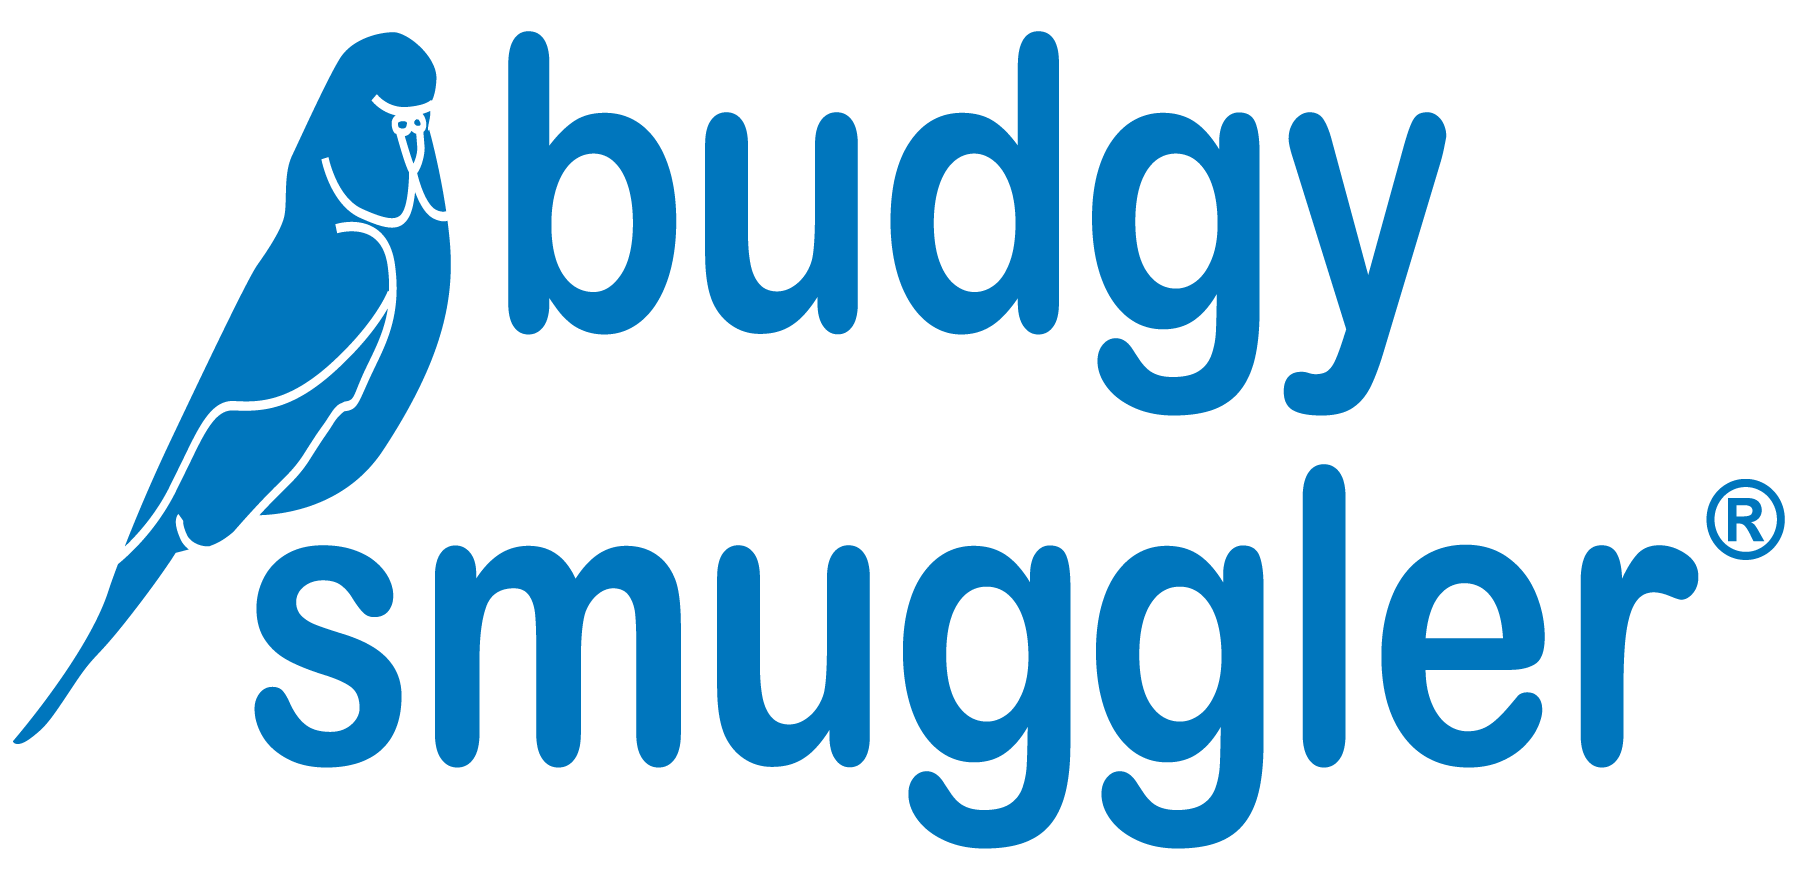 Budgy Smuggler Bleu logo